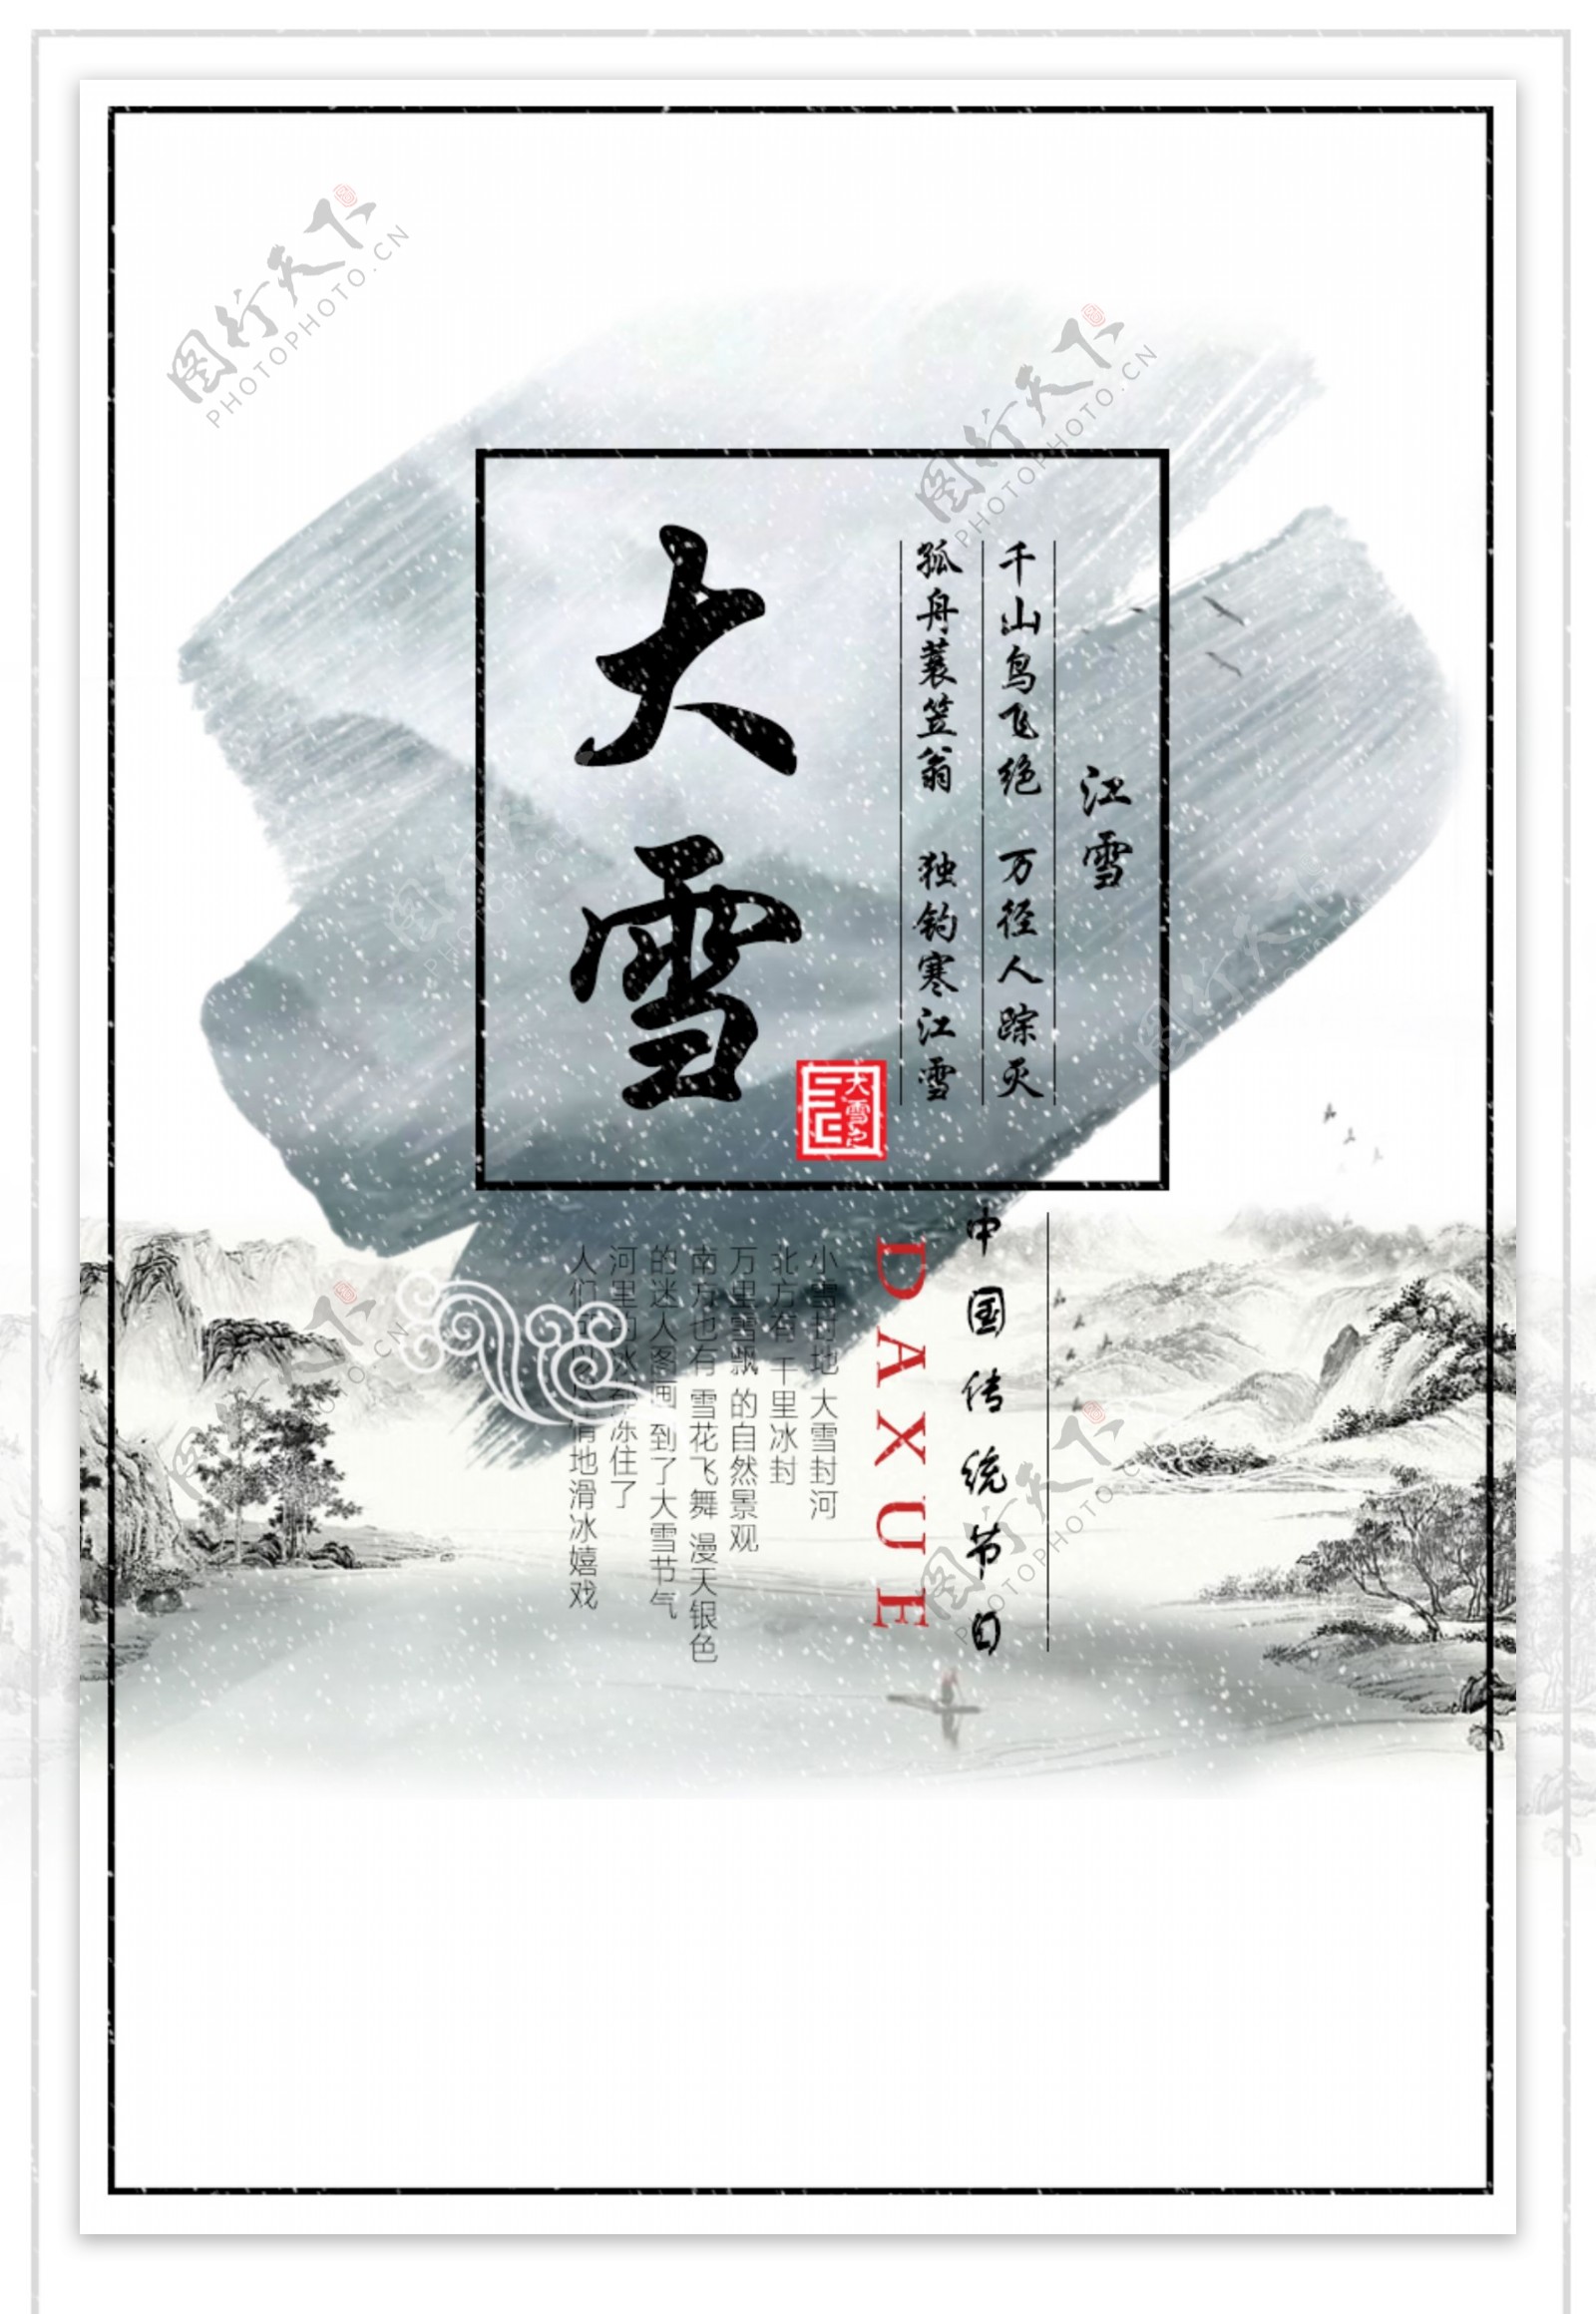 中式古典水墨风格传统节日大雪海报